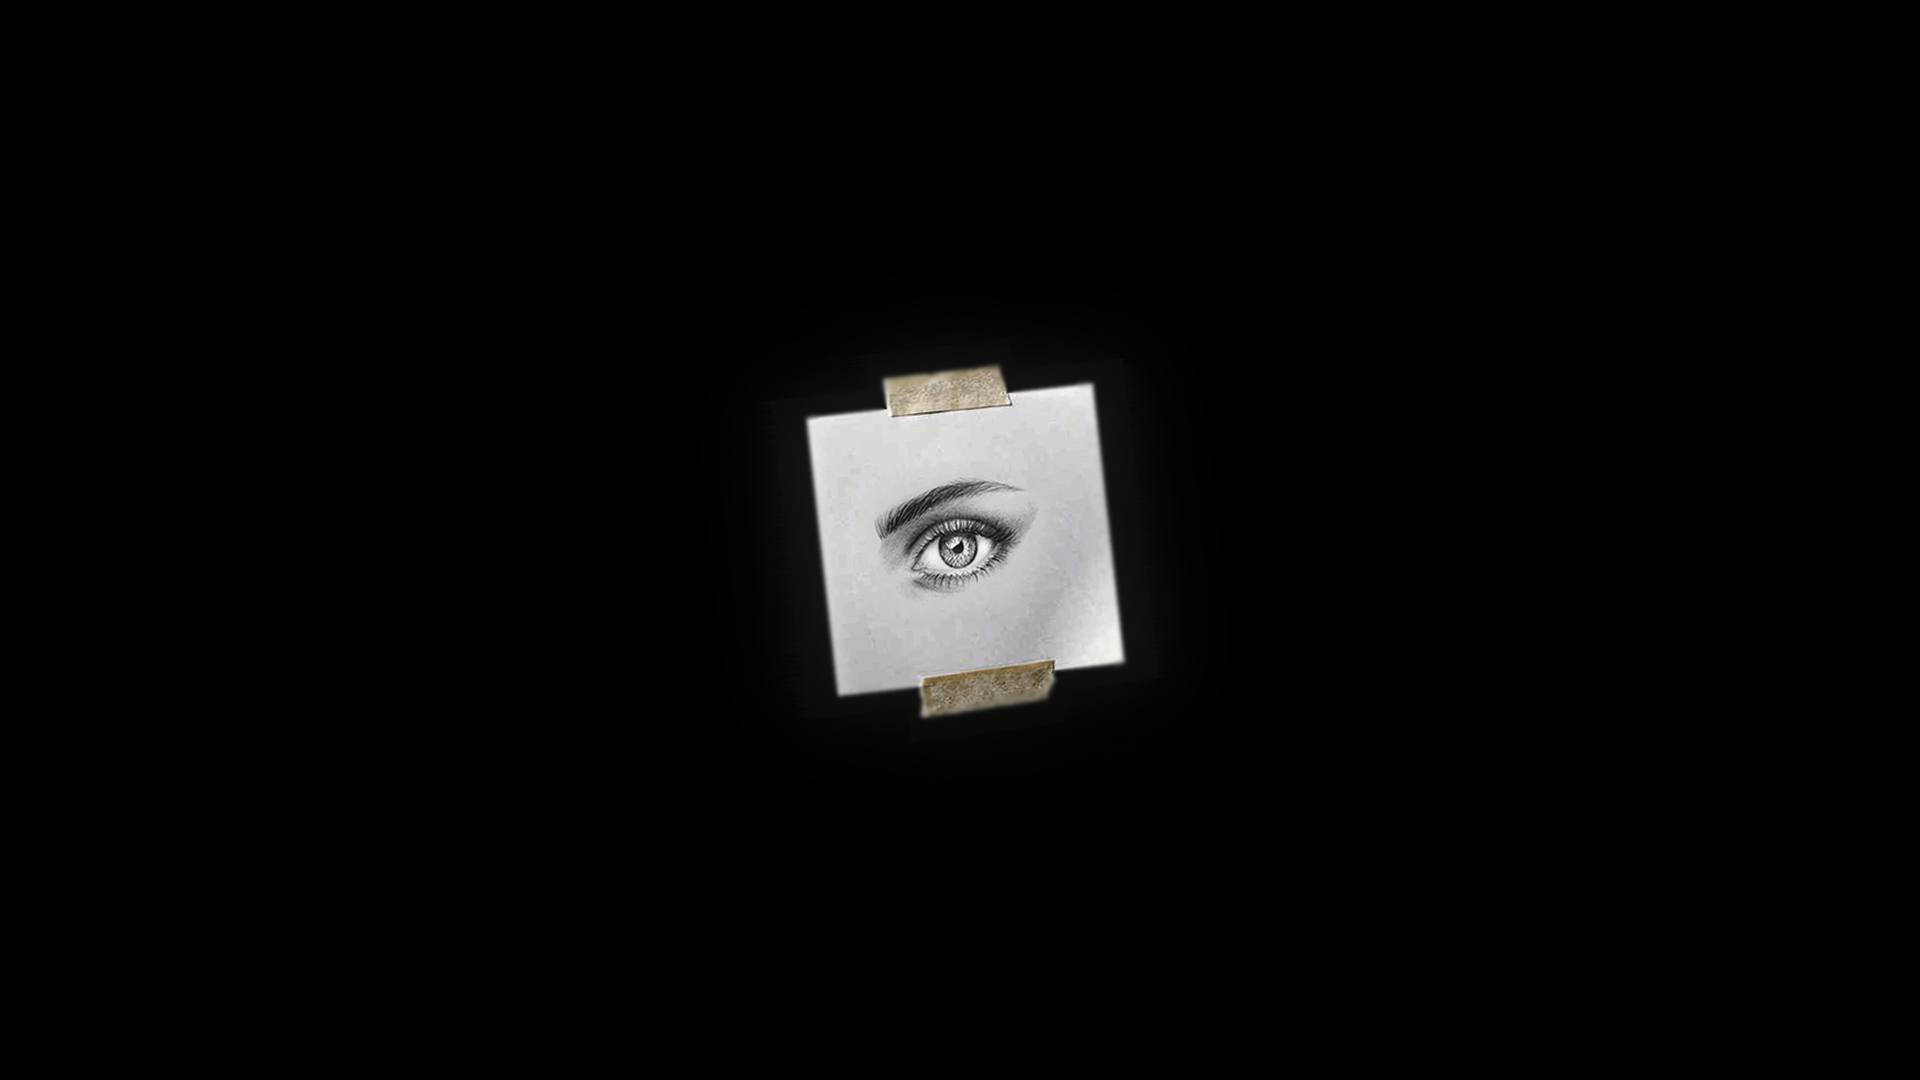 General 1920x1080 simple background black background photoshopped eyes